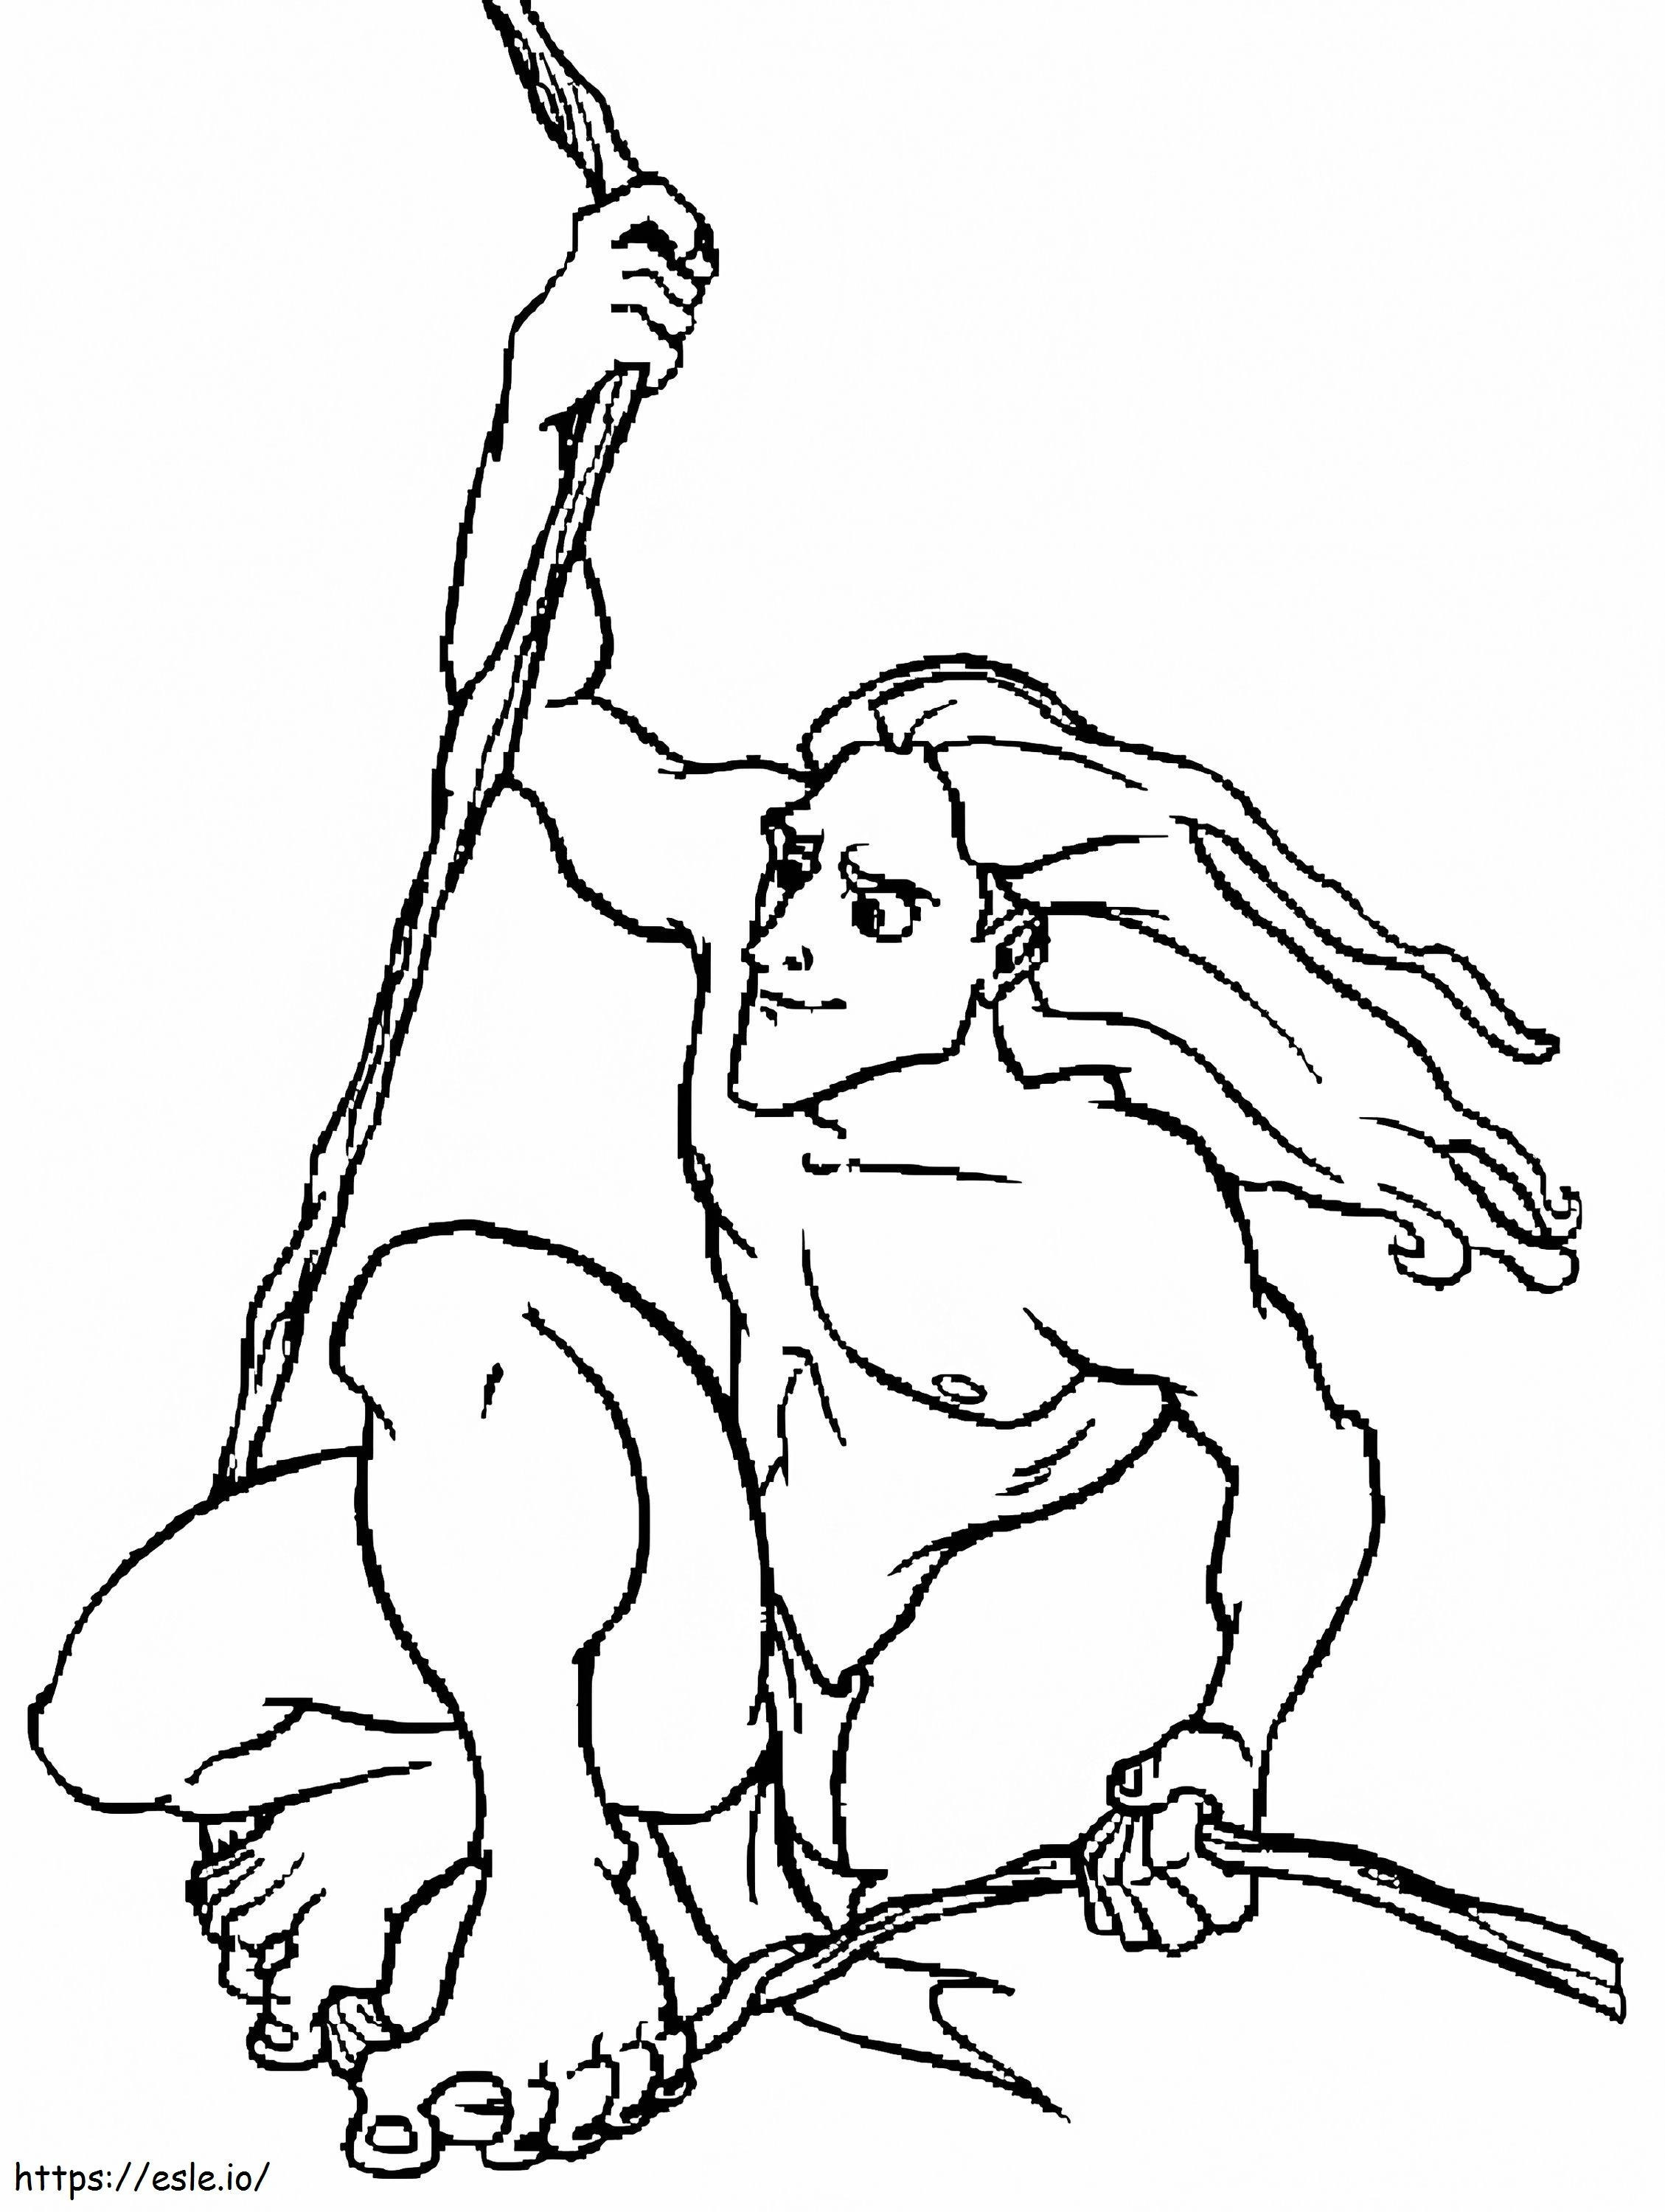 Great Tarzan coloring page